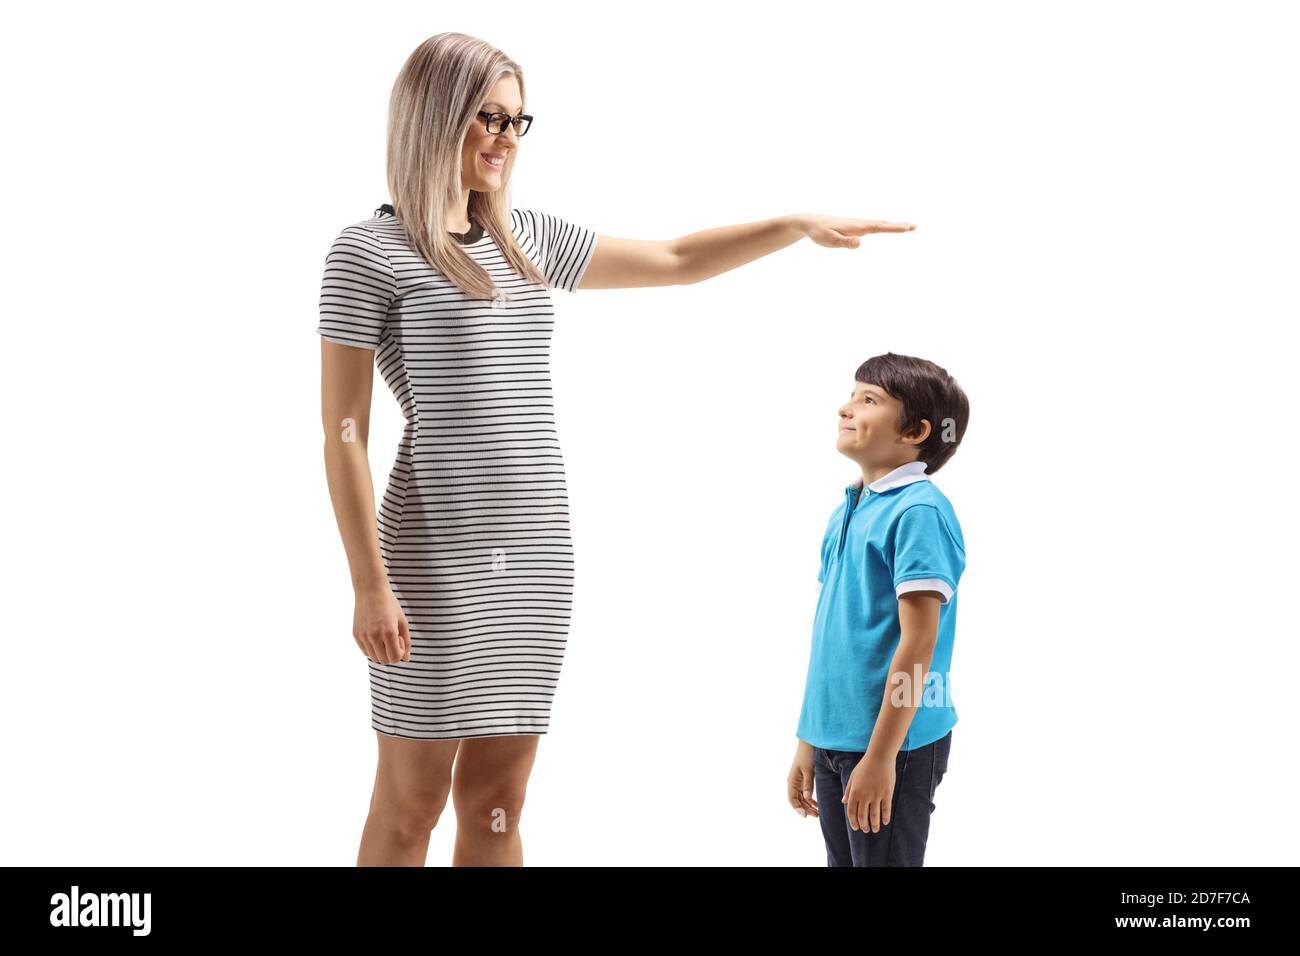 Junge Frau gestikuliert mit der Hand und zeigt die Höhe der Ein Junge auf weißem Hintergrund isoliert Stockfoto